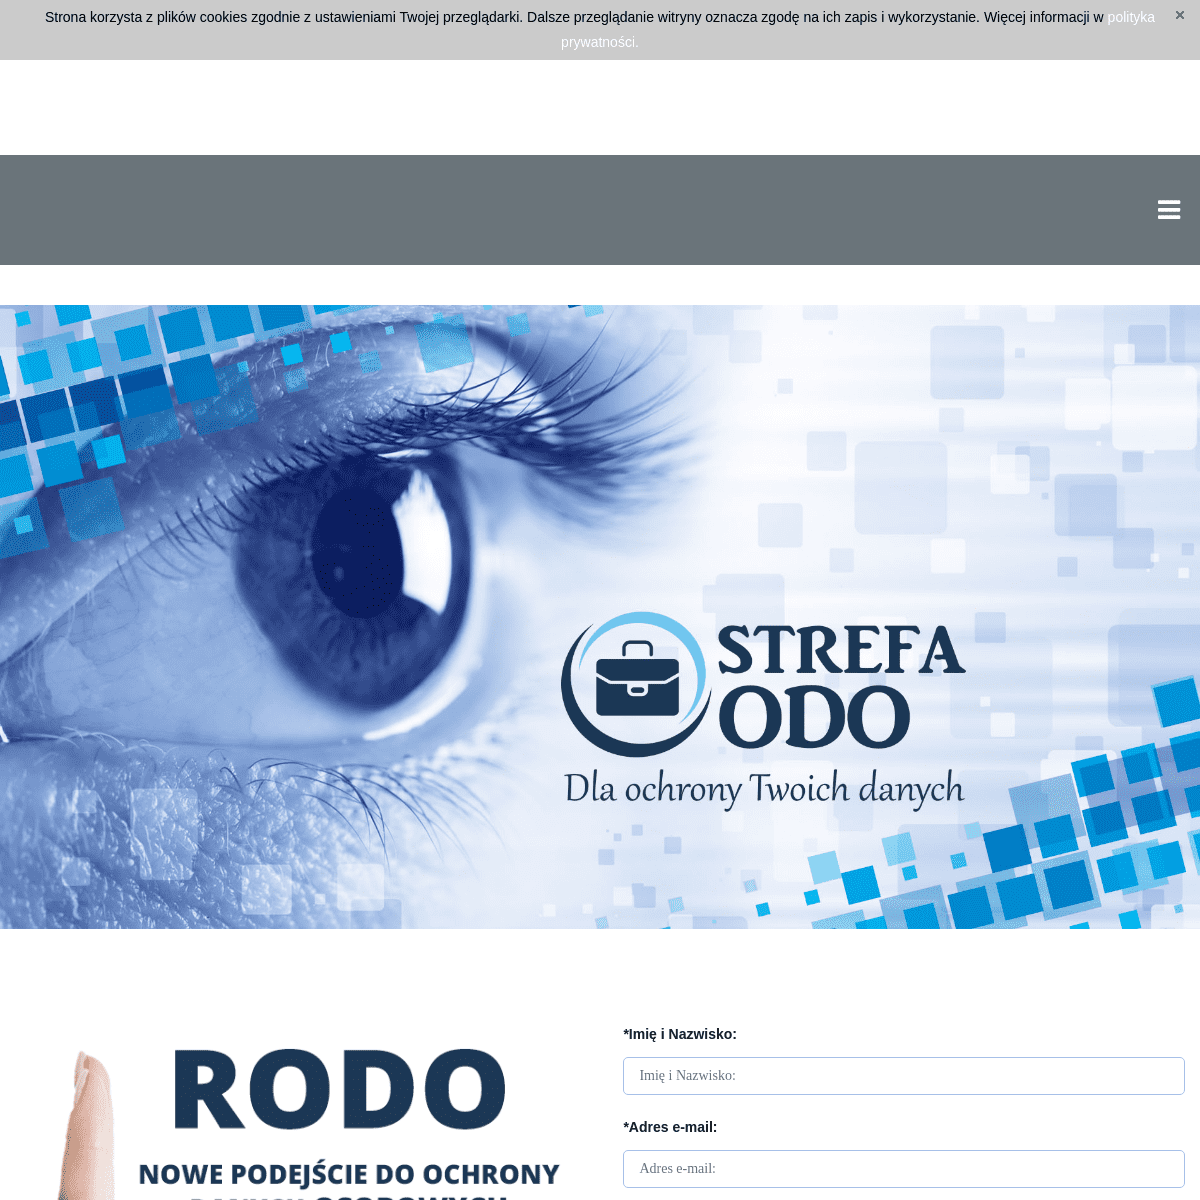 A complete backup of strefaodo.pl